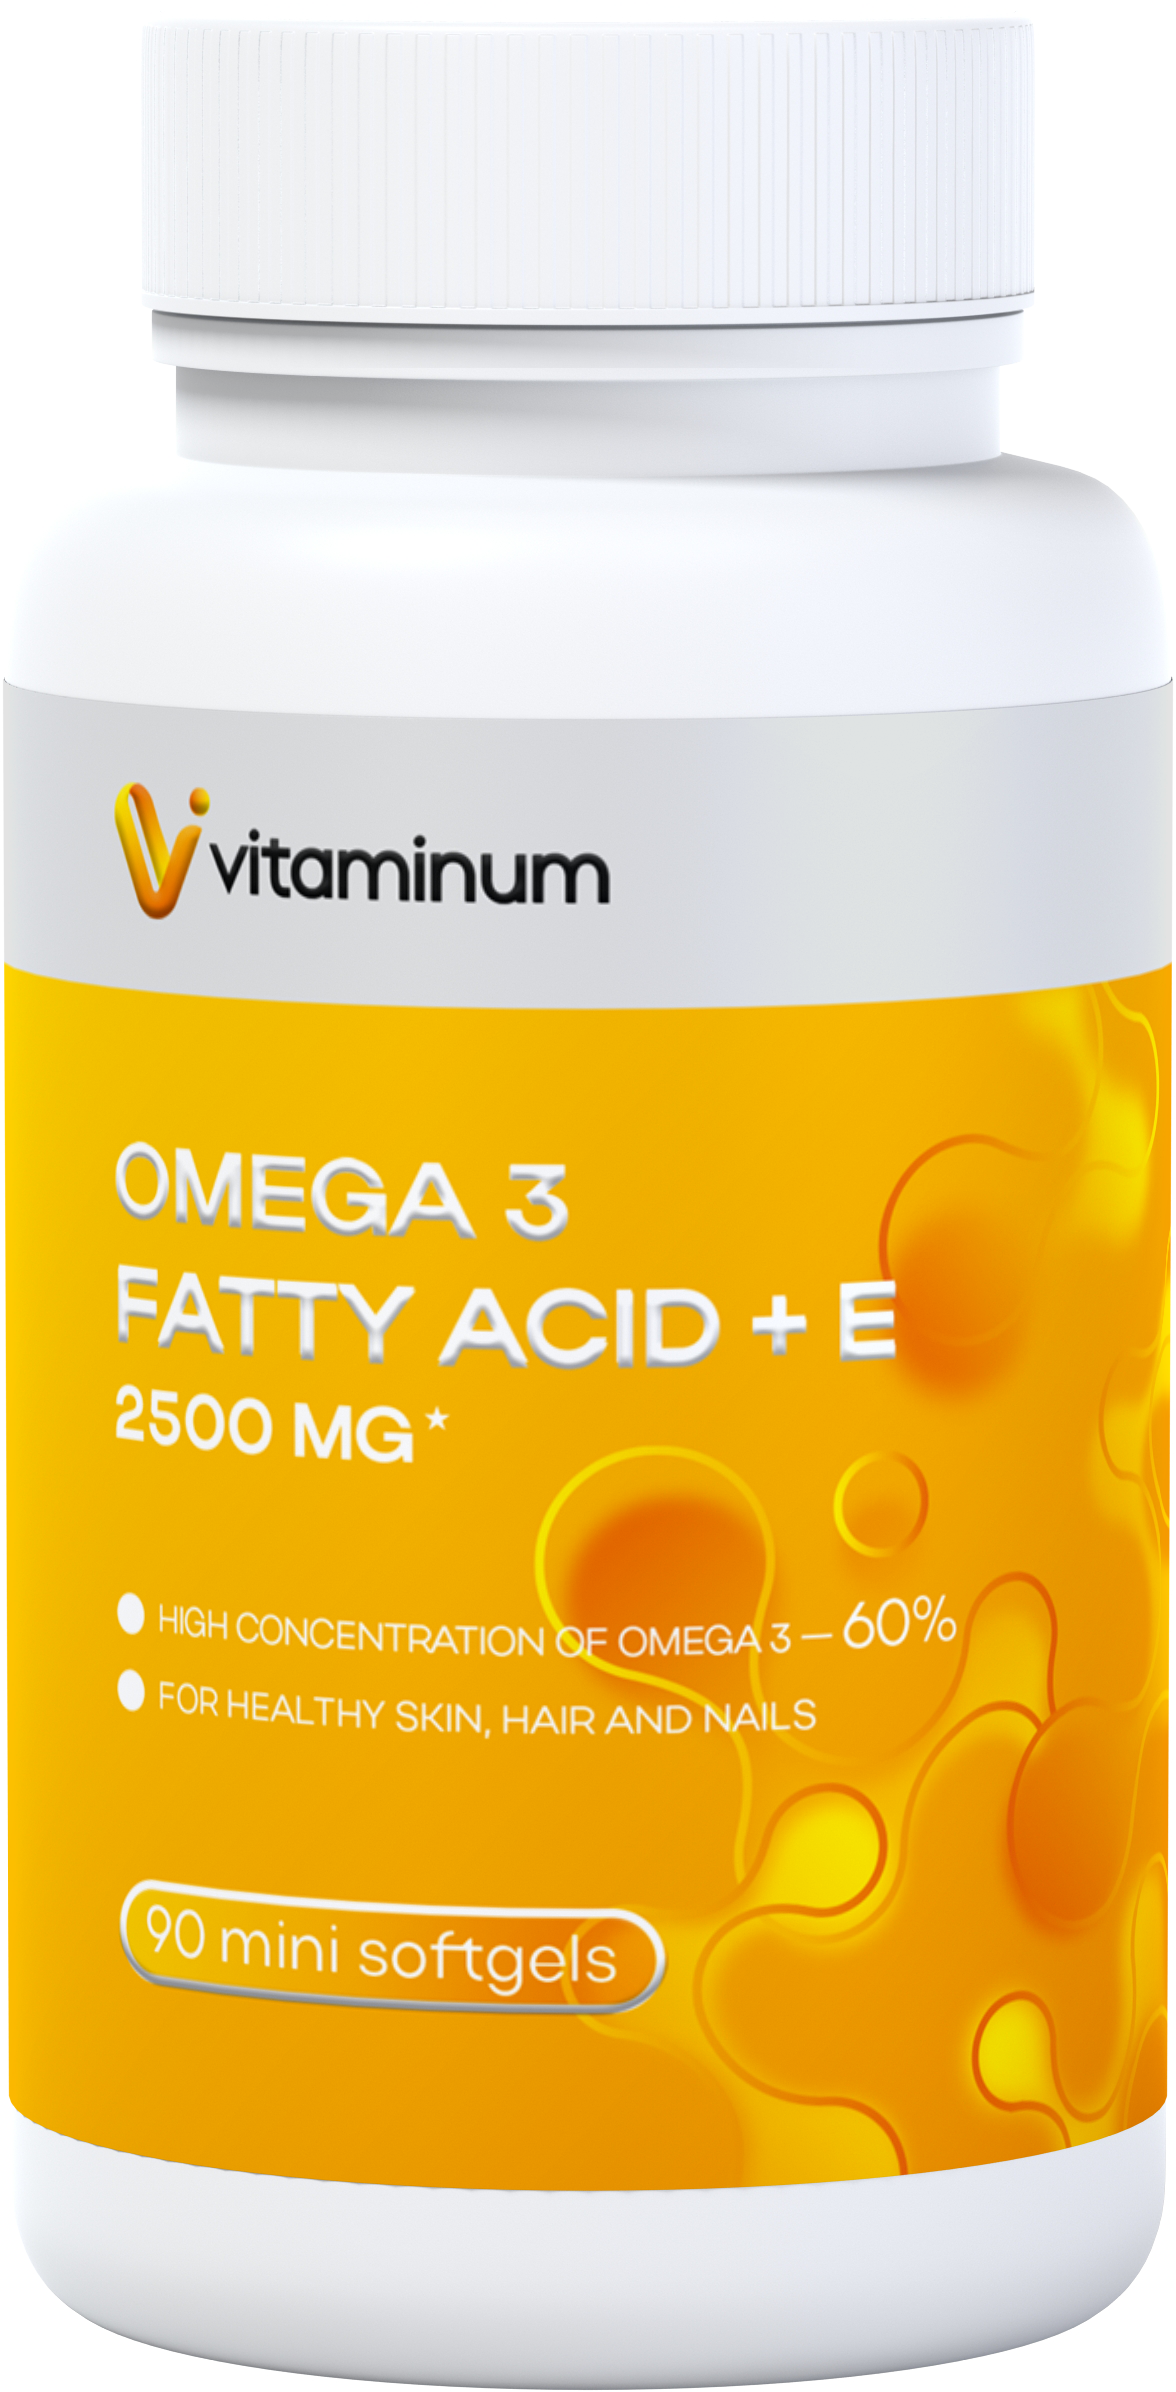  Vitaminum ОМЕГА 3 60% + витамин Е (2500 MG*) 90 капсул 700 мг   в Уфе